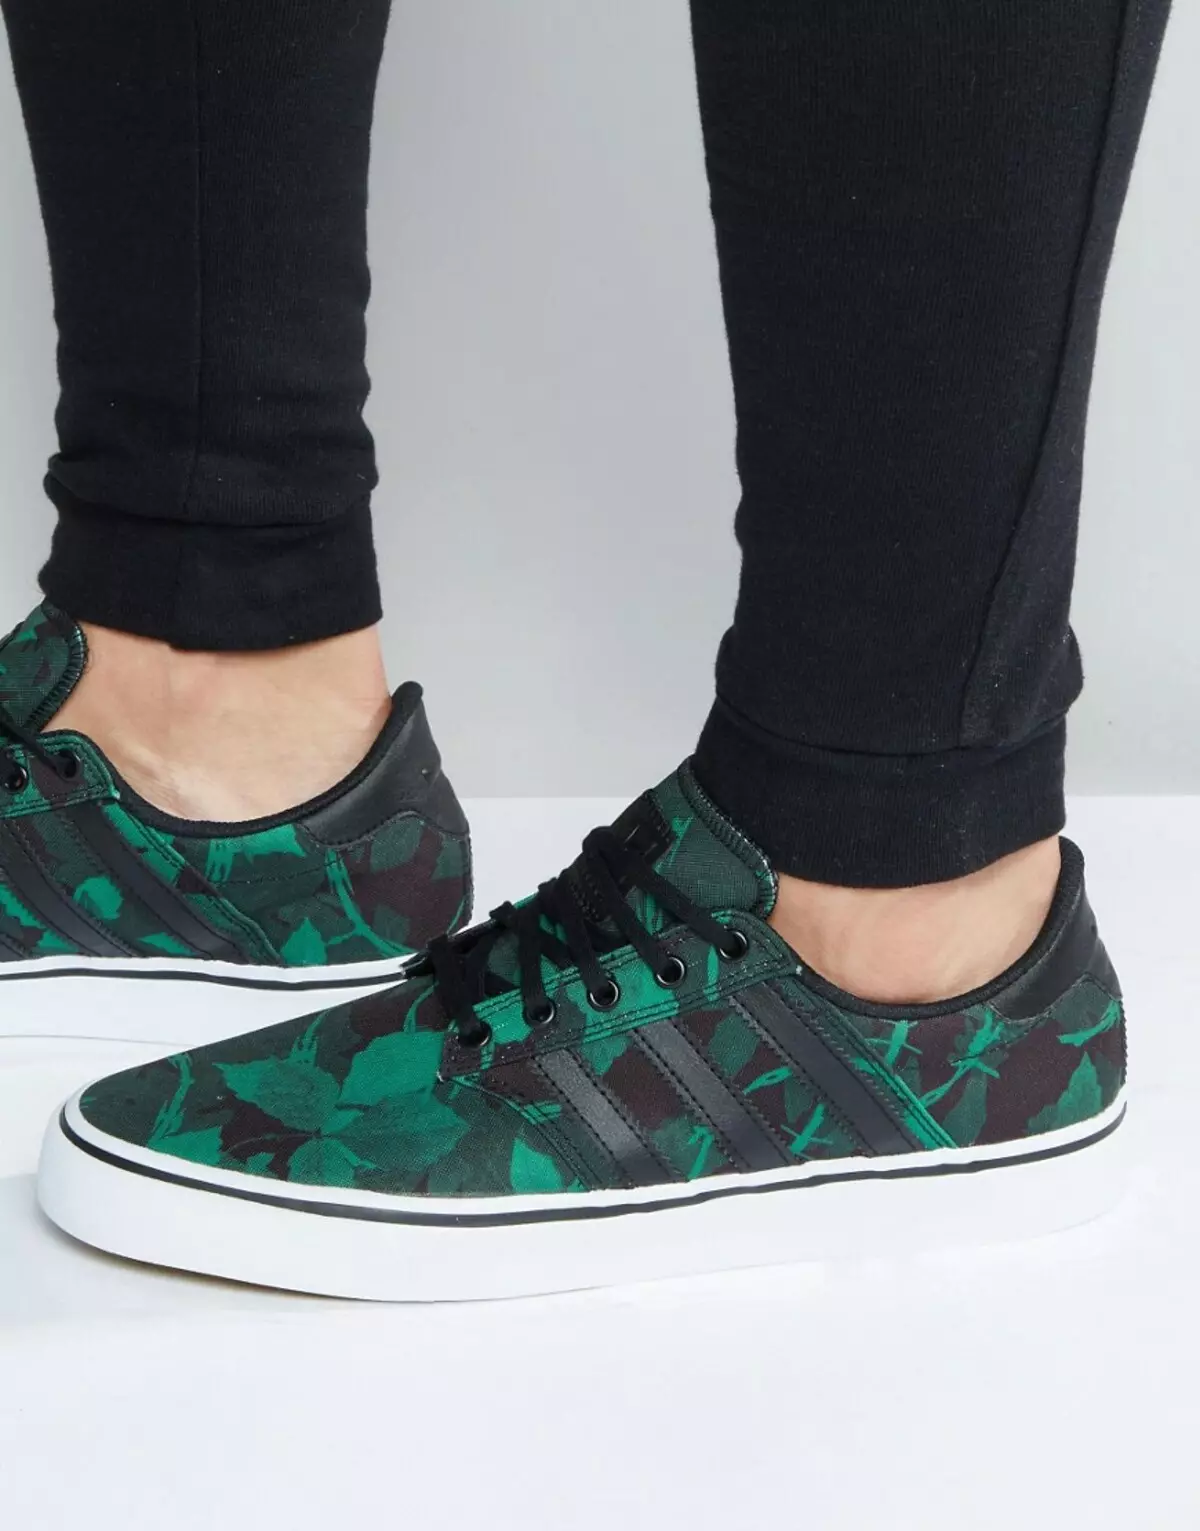 Green sneakers (foto 41): ụdị akwụkwọ ndụ akwụkwọ ndụ ụmụ nwanyị 2013_25